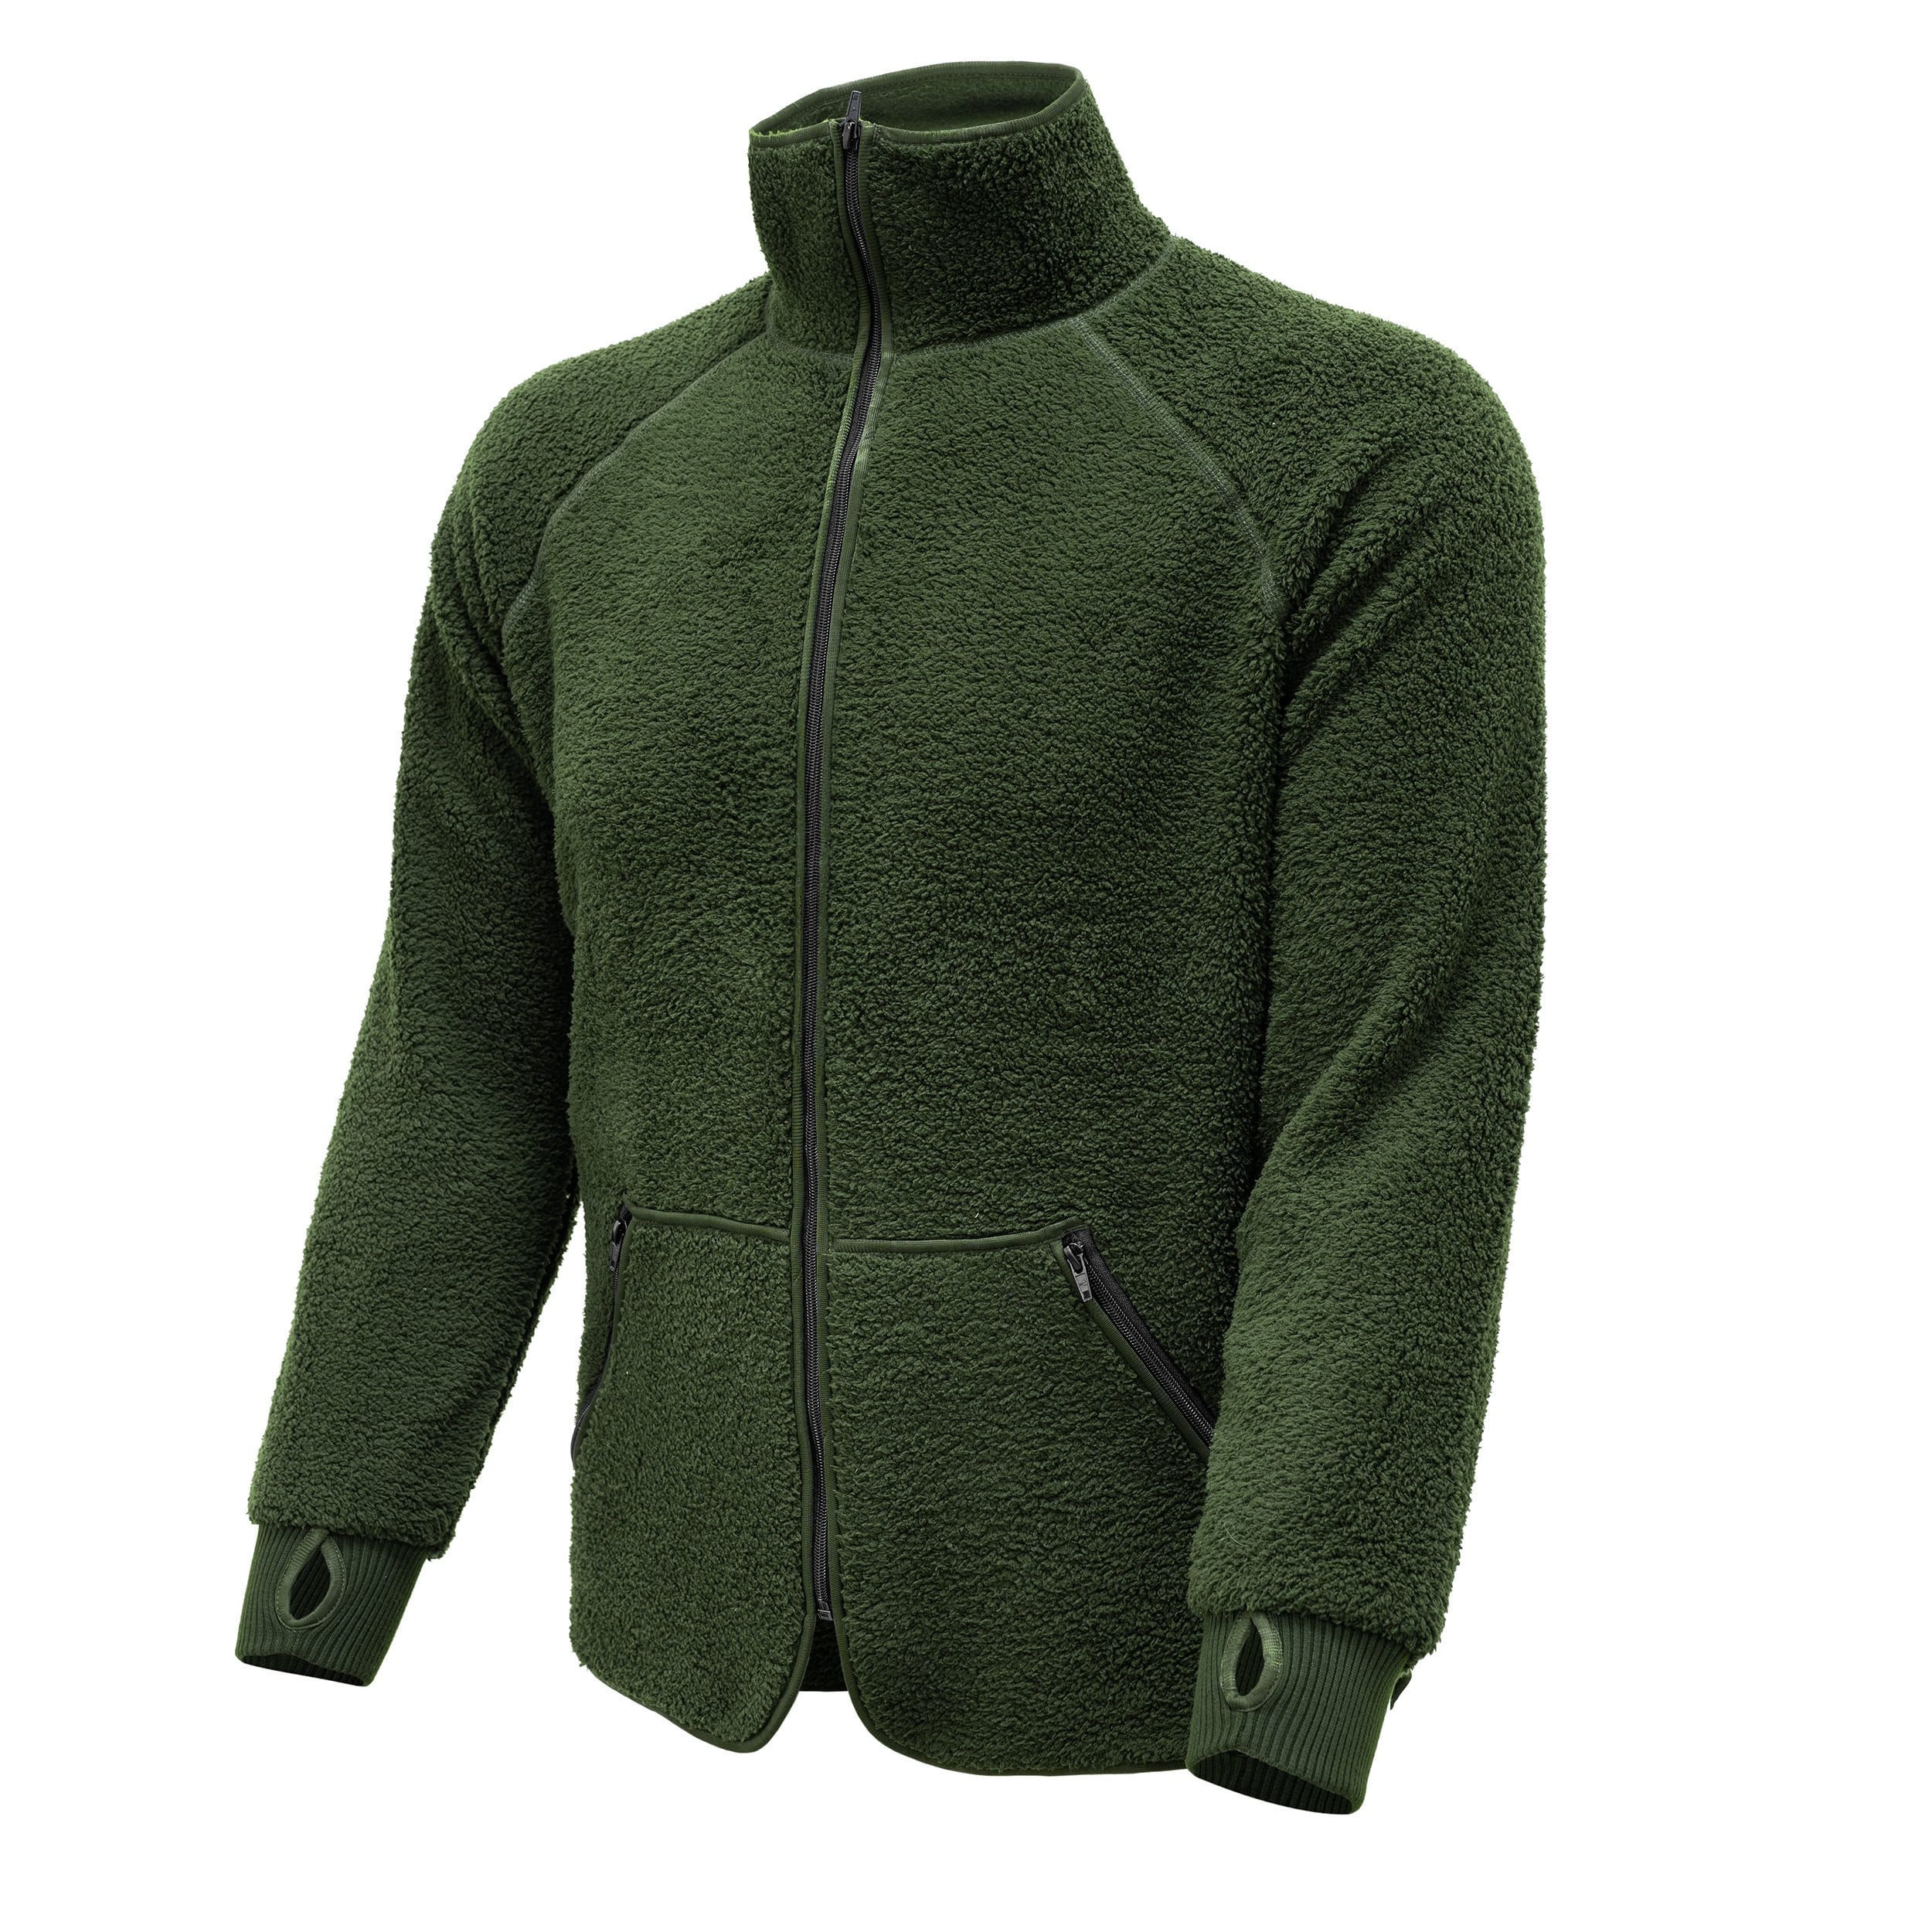 Bunda fleecová mikina se sníženou hořlavostí zelená Utility Jacket KL Holandsko originál Velikost: 6080/9500